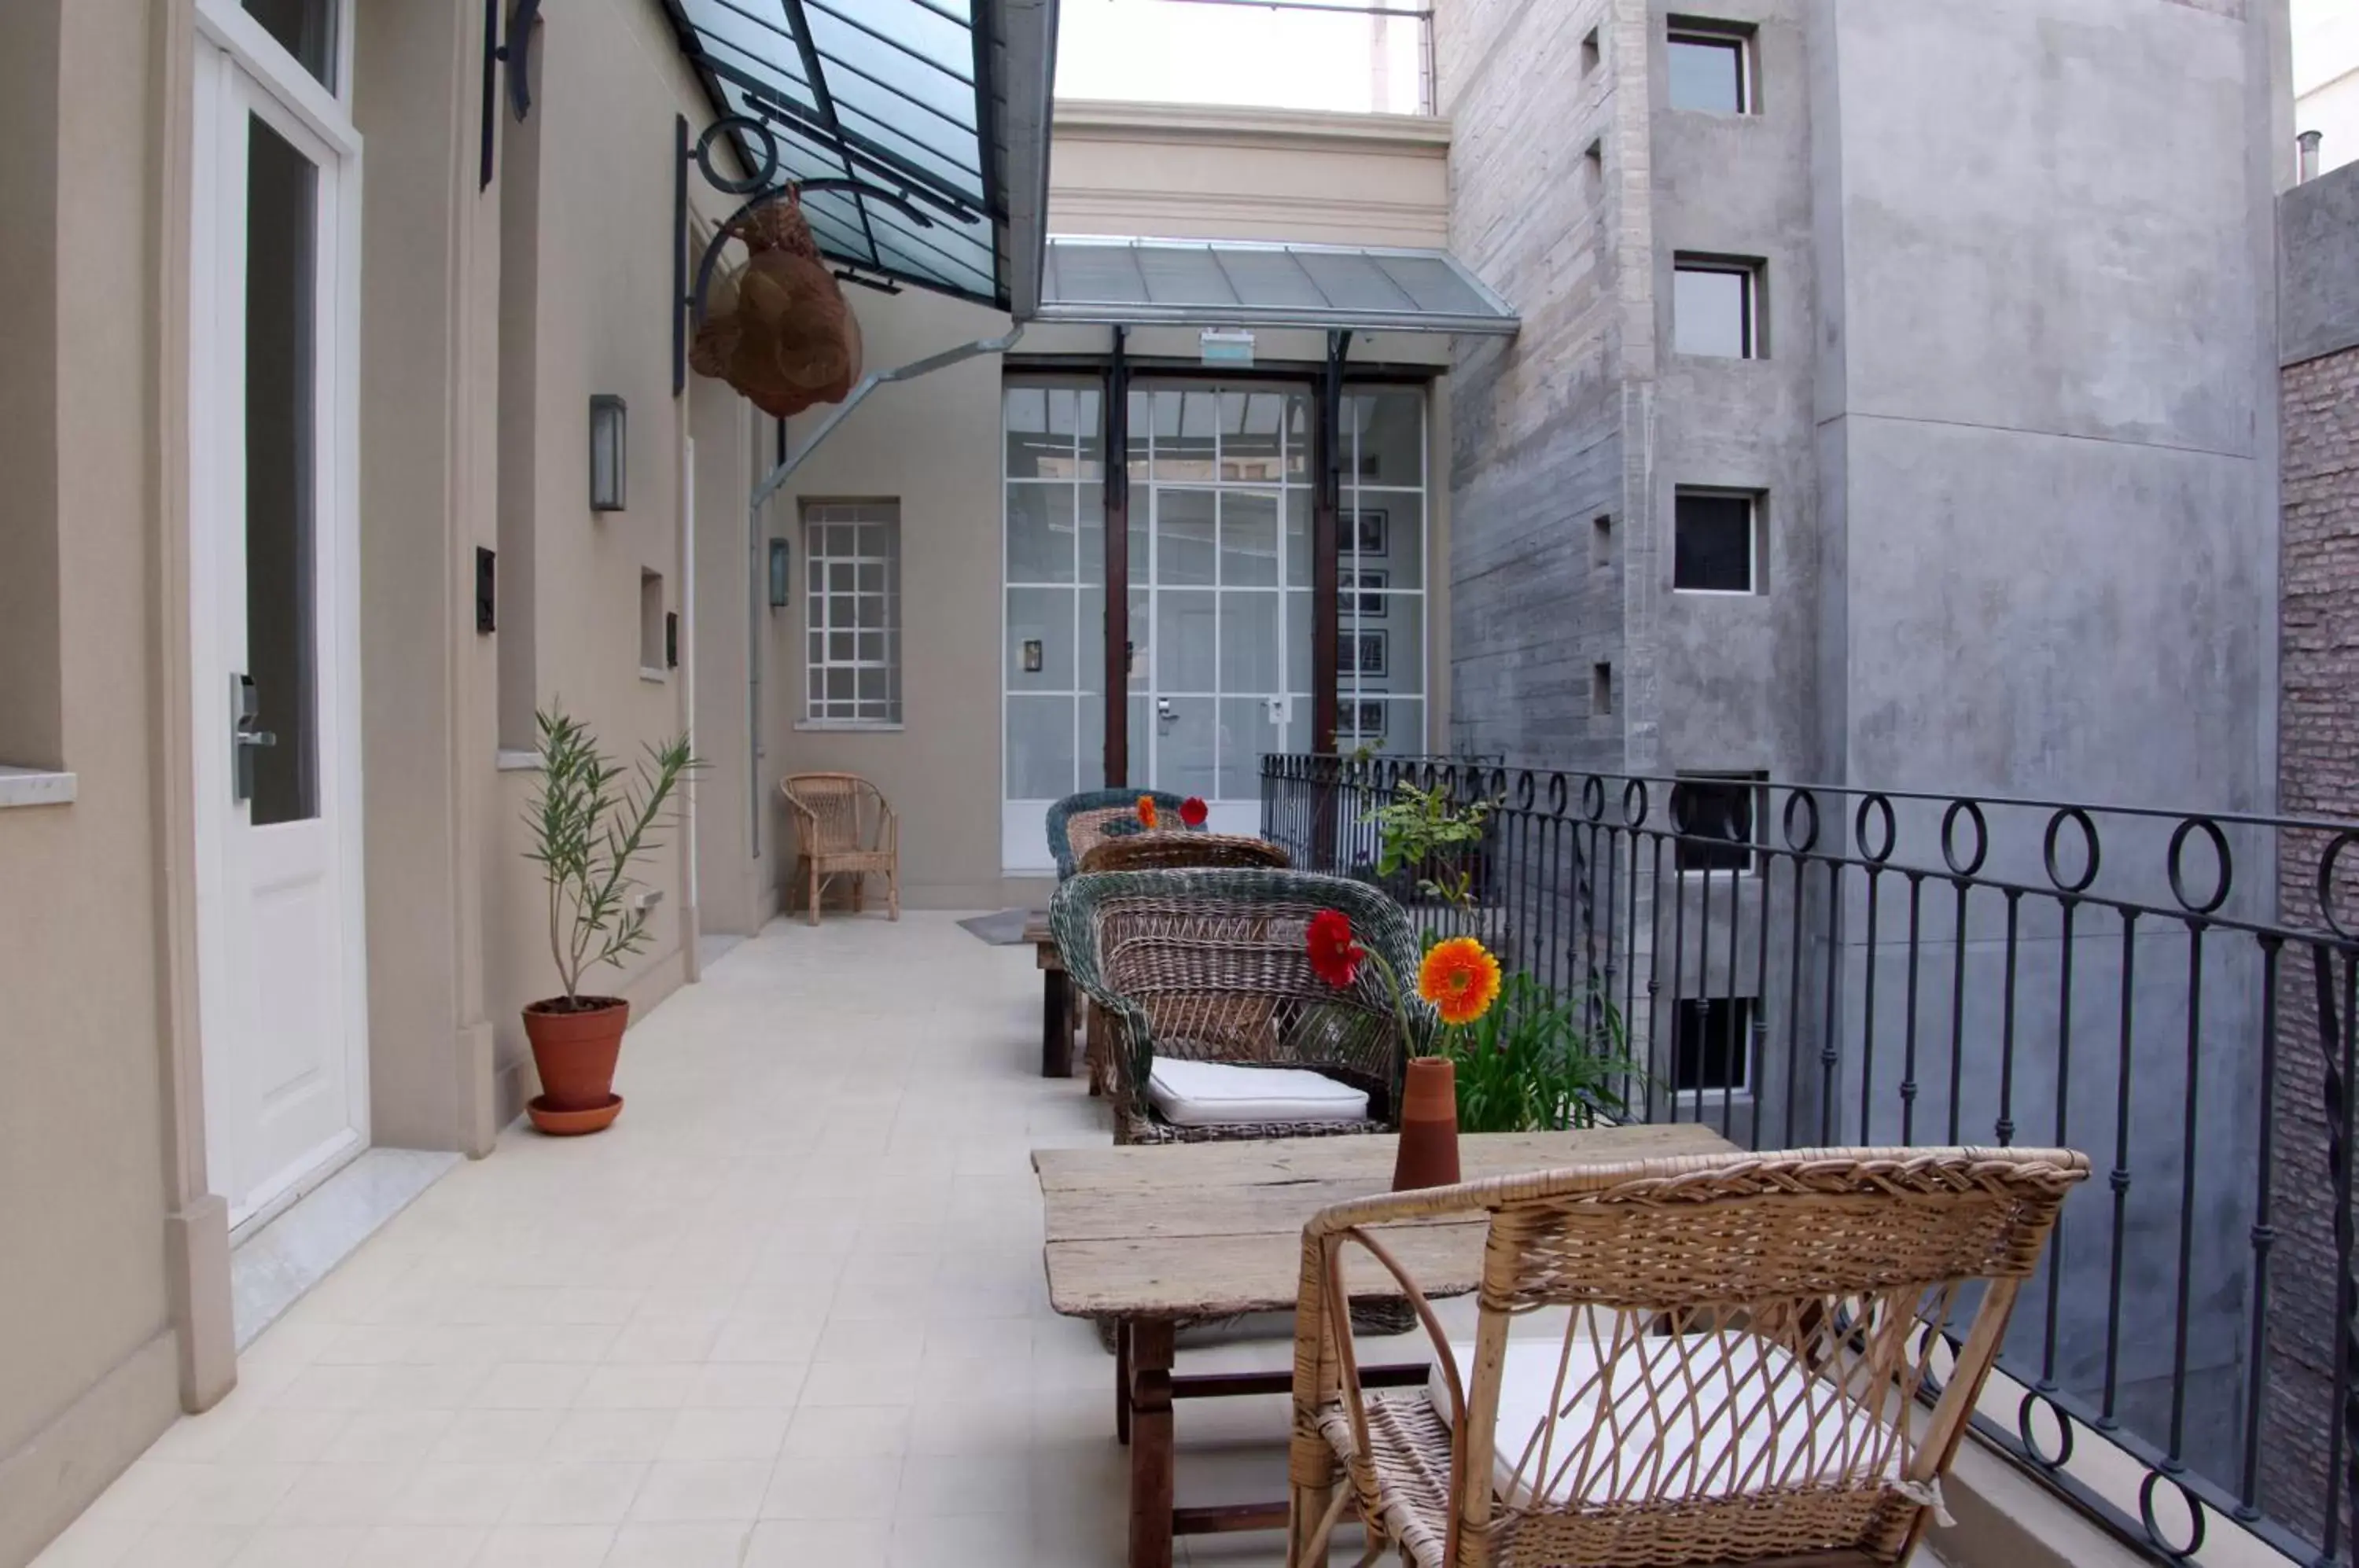 Balcony/Terrace, Patio/Outdoor Area in Patios de San Telmo